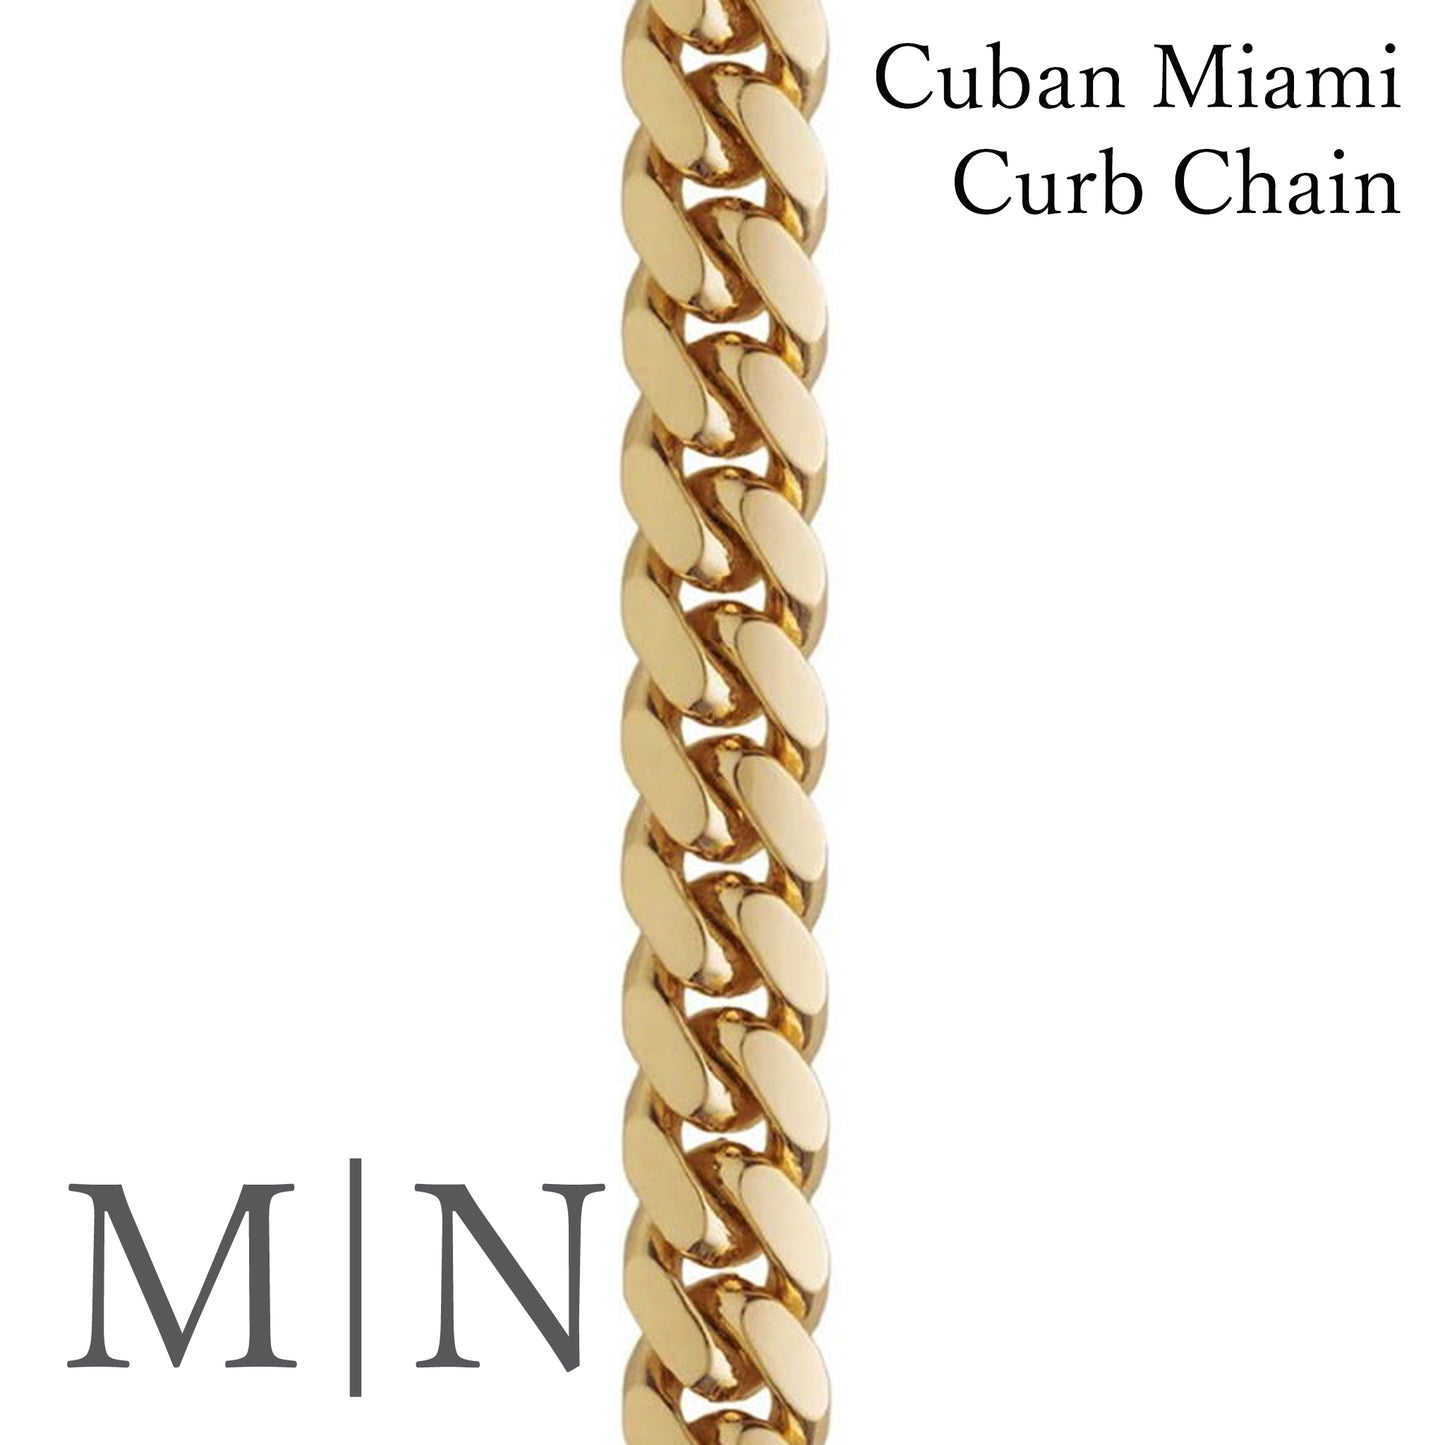 Cuban Miami Curb Chains